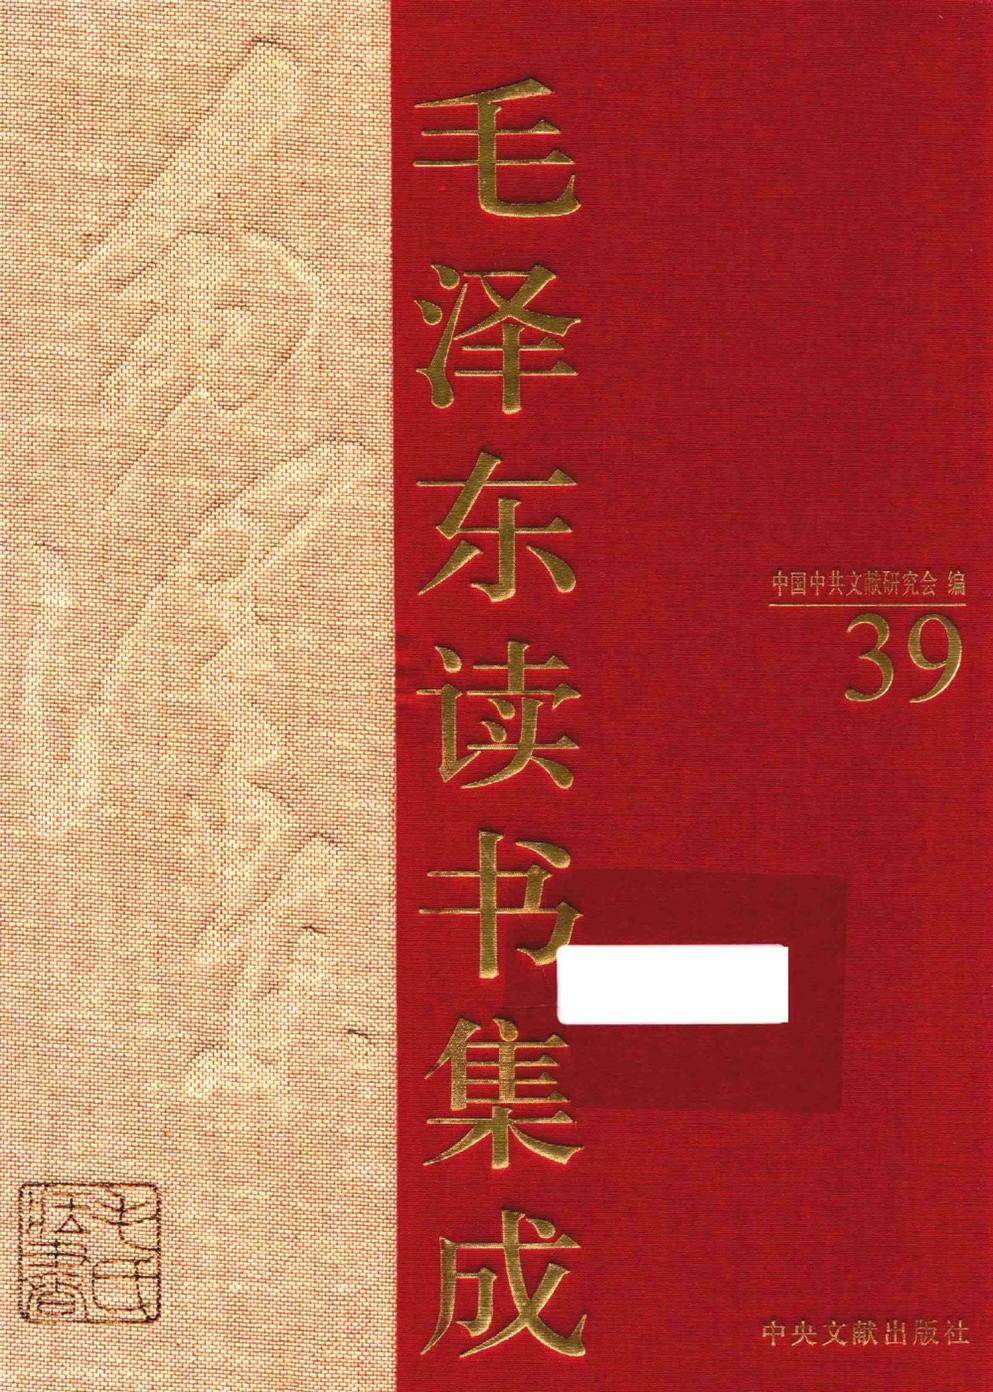 毛泽东读书集成（第39卷）-1